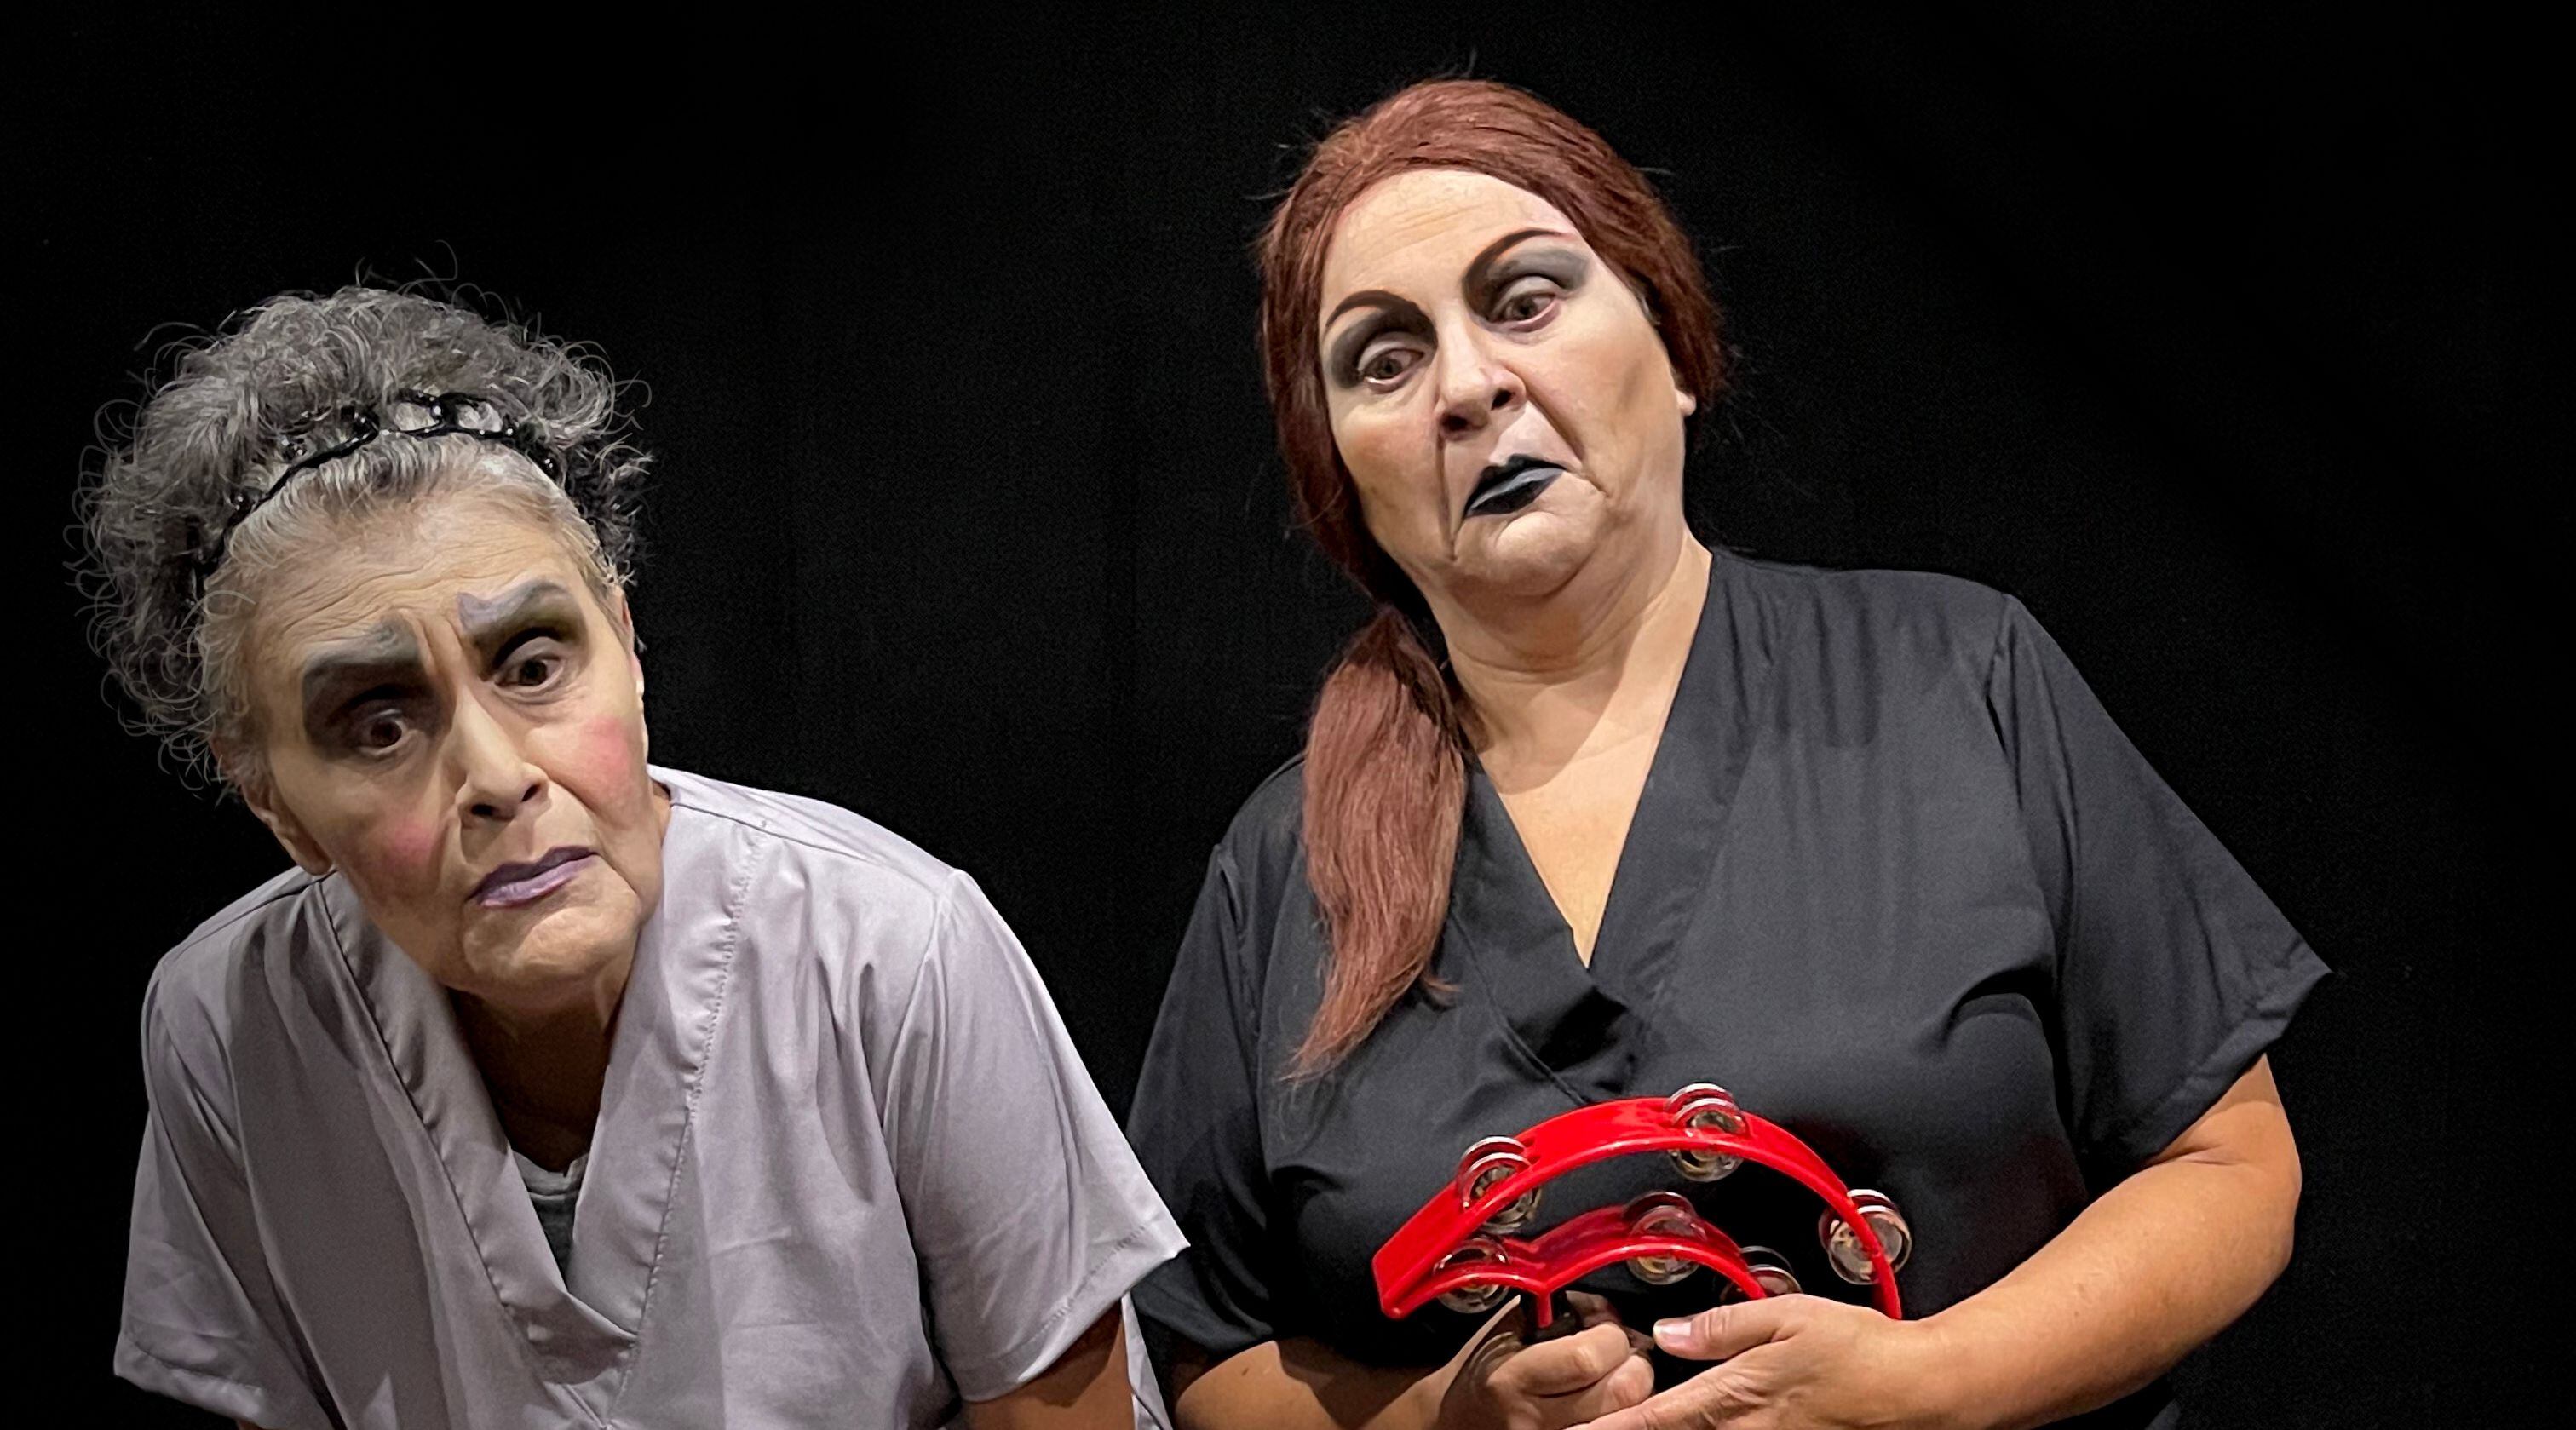 María Torres y Marcia Saborío se vuelven a unir en una obra de teatro tras la pandemia. Las actrices actúan y coproducen 'Radojka'. Foto: Cortesía